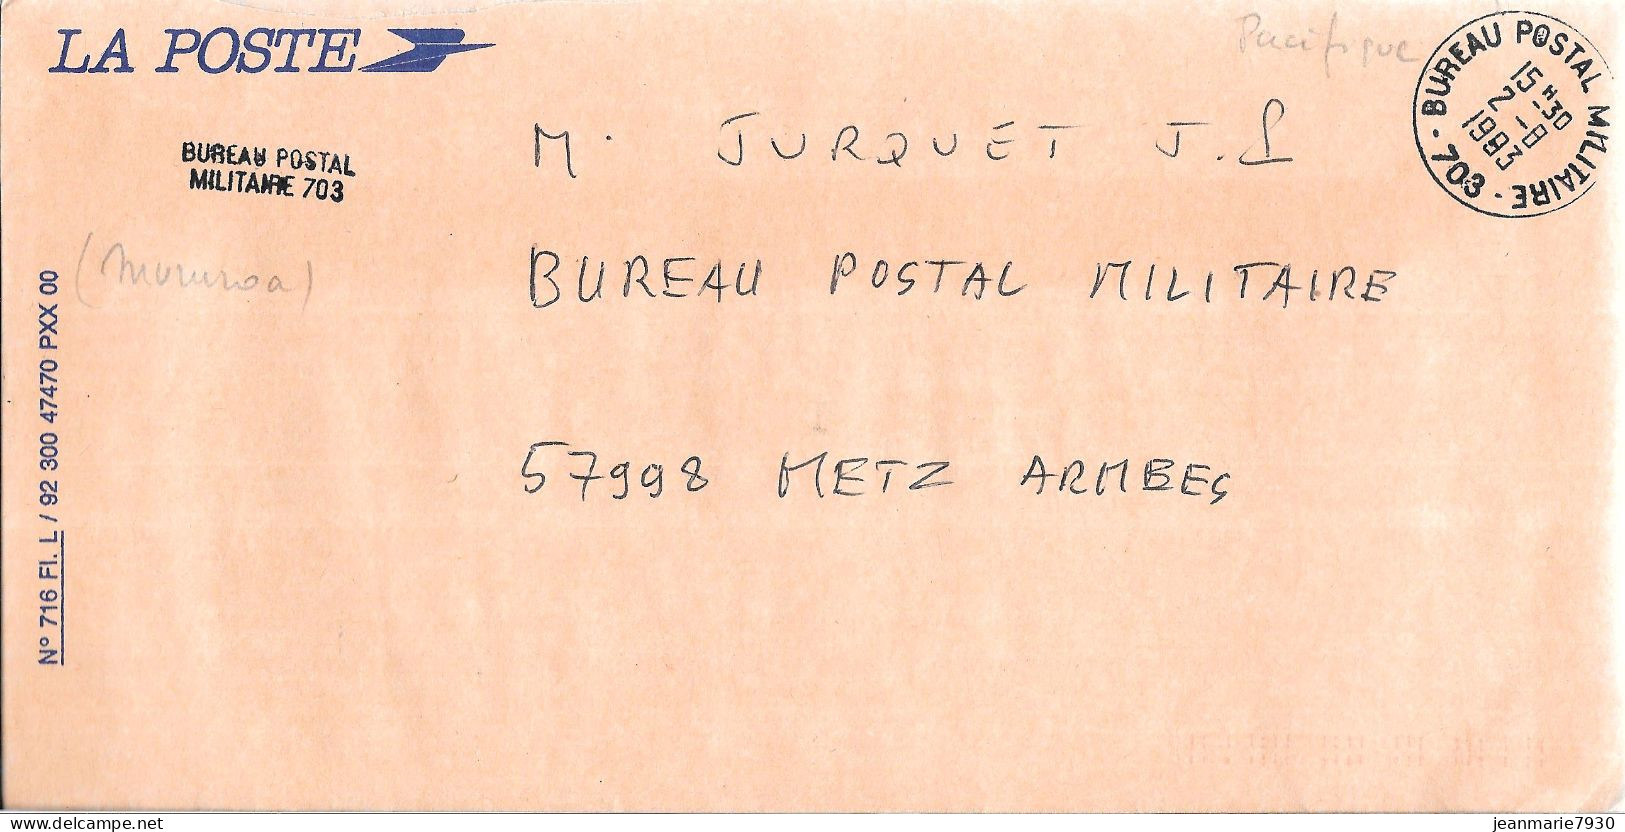 P296 - LETTRE DU BUREAU POSTAL MILITAIRE 703 ( MIRUROA ) DU 02/08/93 POUR METZ ARMEES - Militärstempel Ab 1900 (ausser Kriegszeiten)